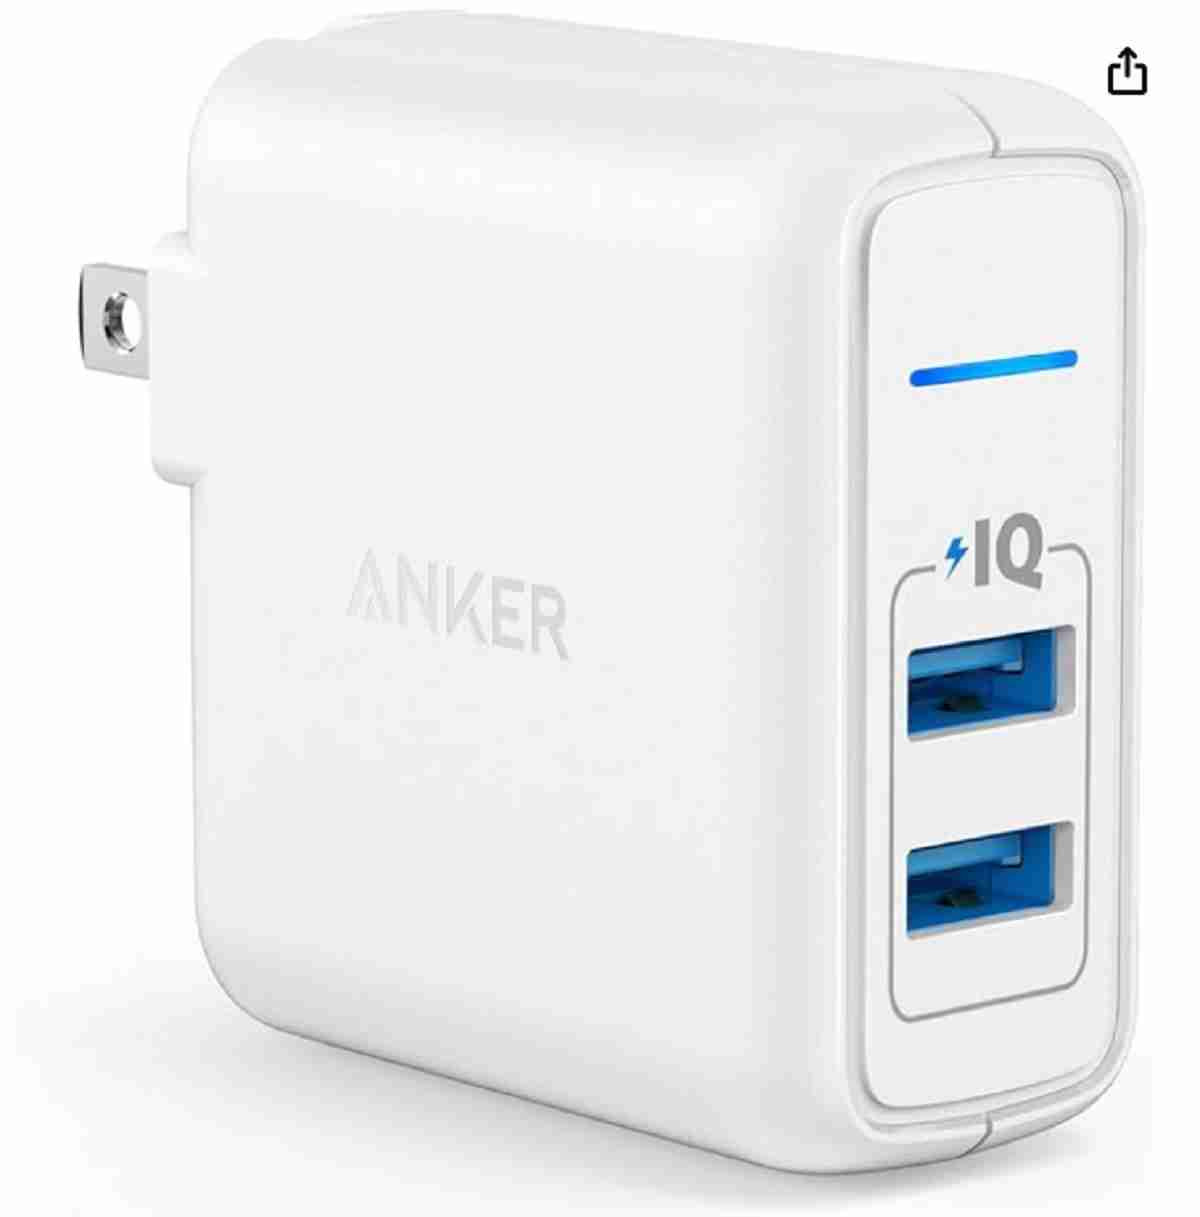 Ankerの急速充電器「Anker PowerPort 2 Elite」をご紹介